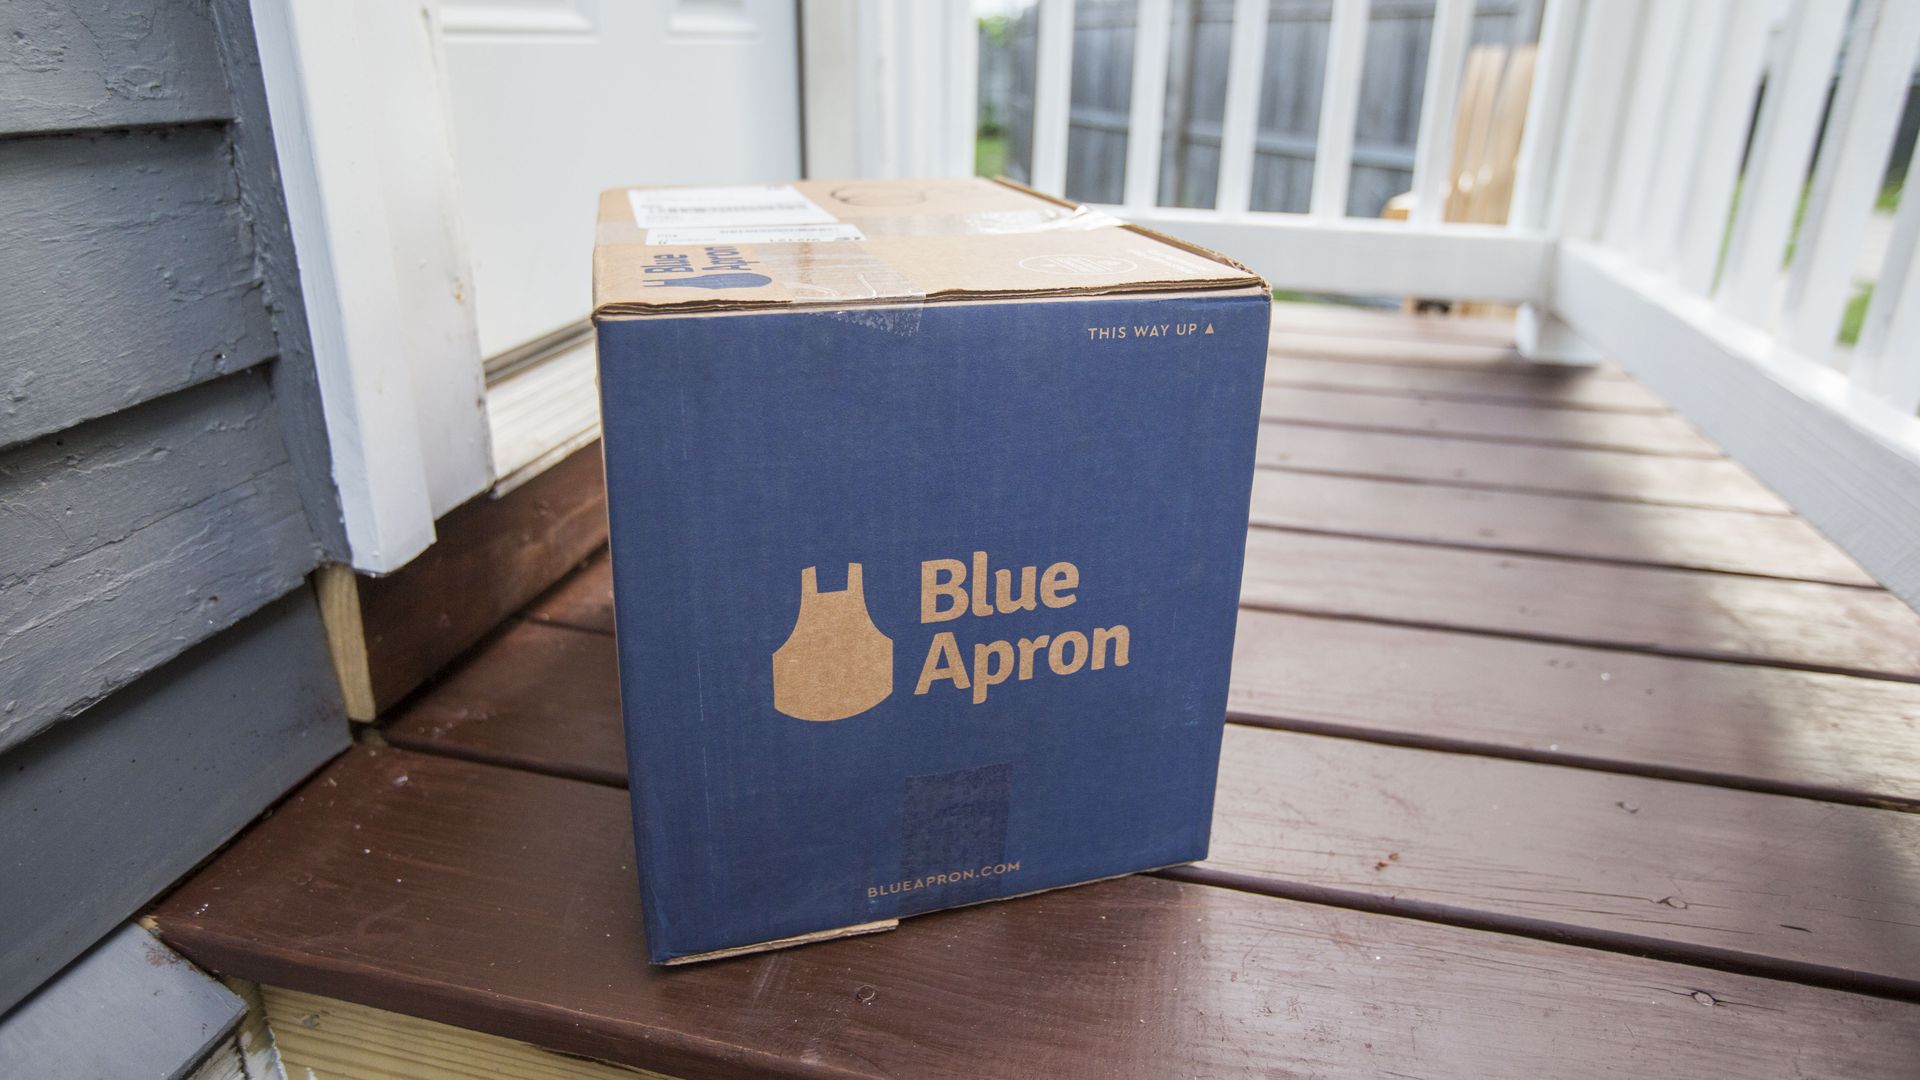 A Blue Apron box on a doorstep